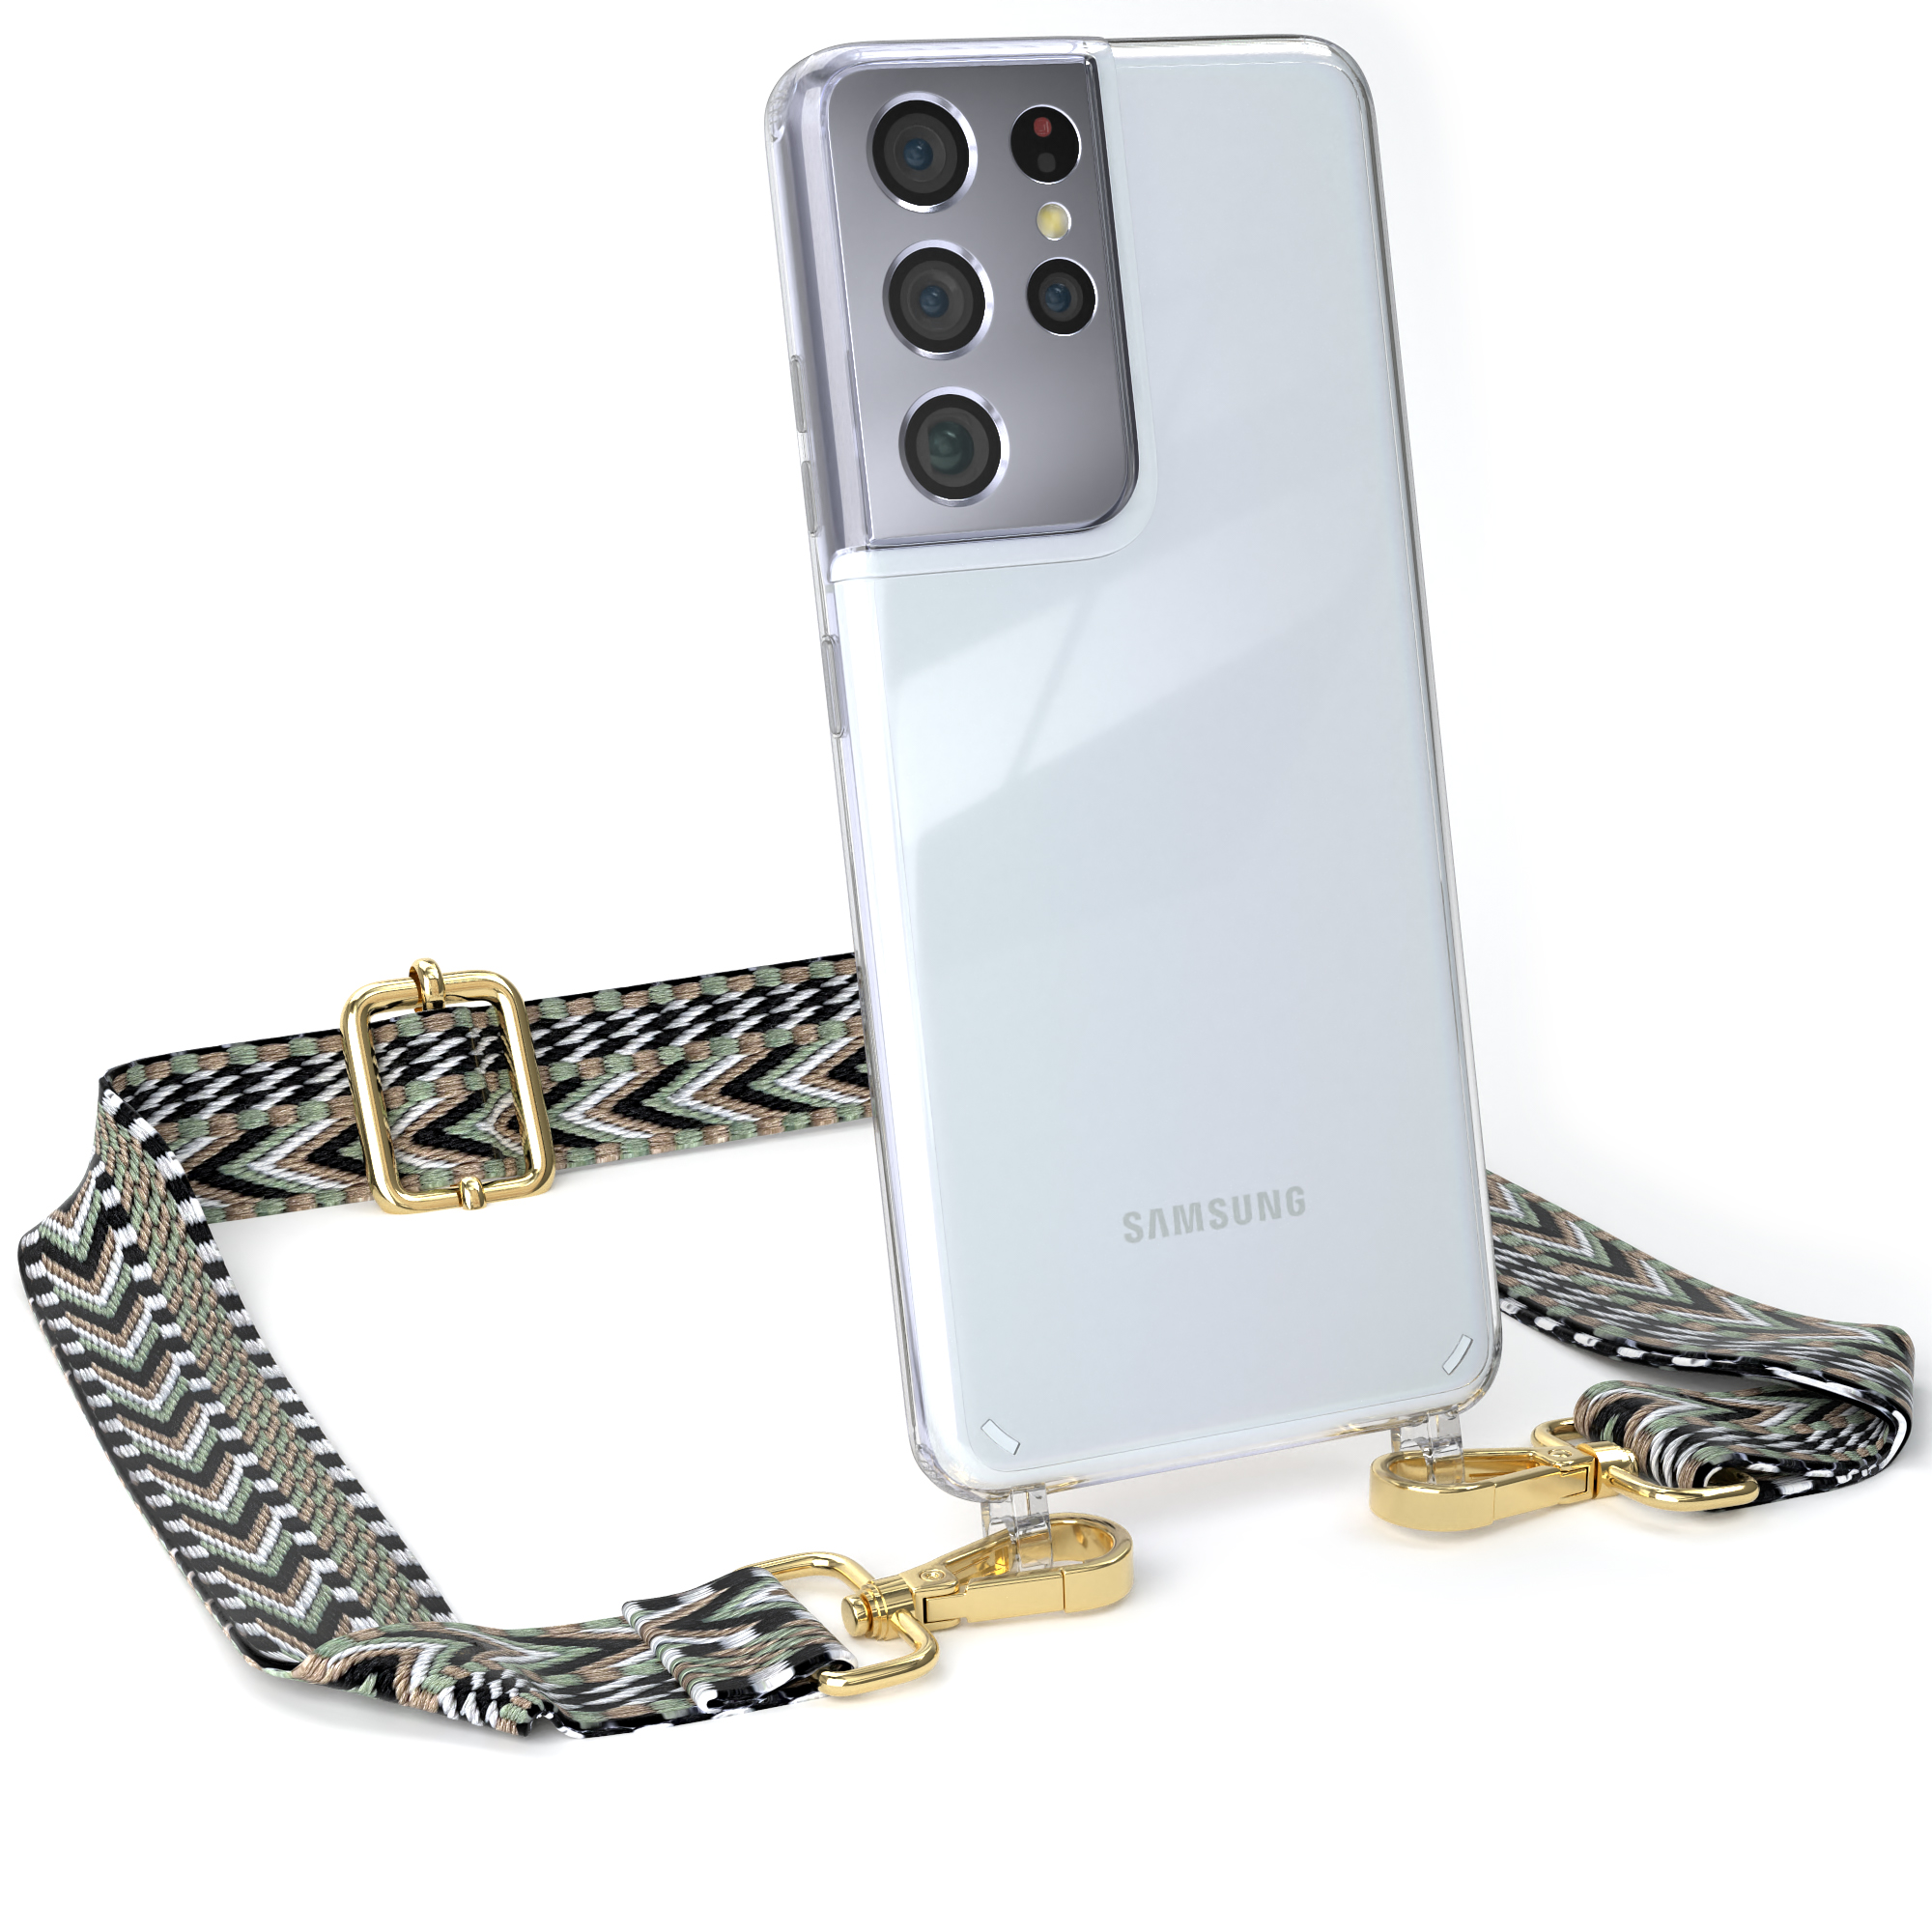 EAZY CASE Style, Samsung, Umhängetasche, Schwarz Galaxy S21 / Kordel Boho Ultra 5G, Transparente Handyhülle mit Grün